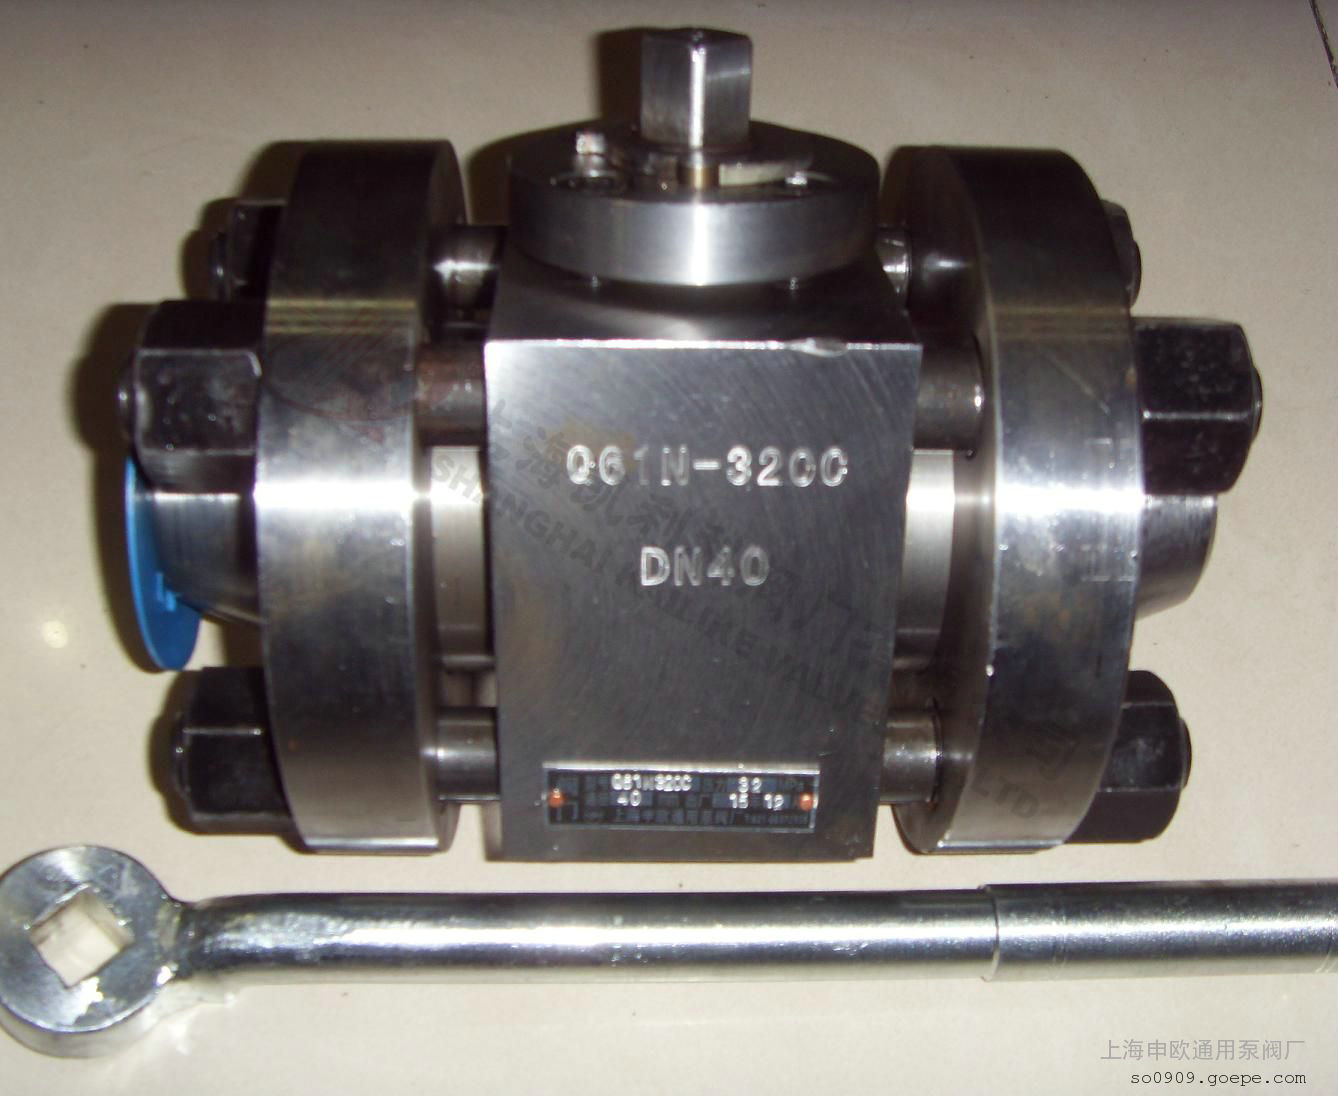 Q61N-160,320高壓焊接球閥